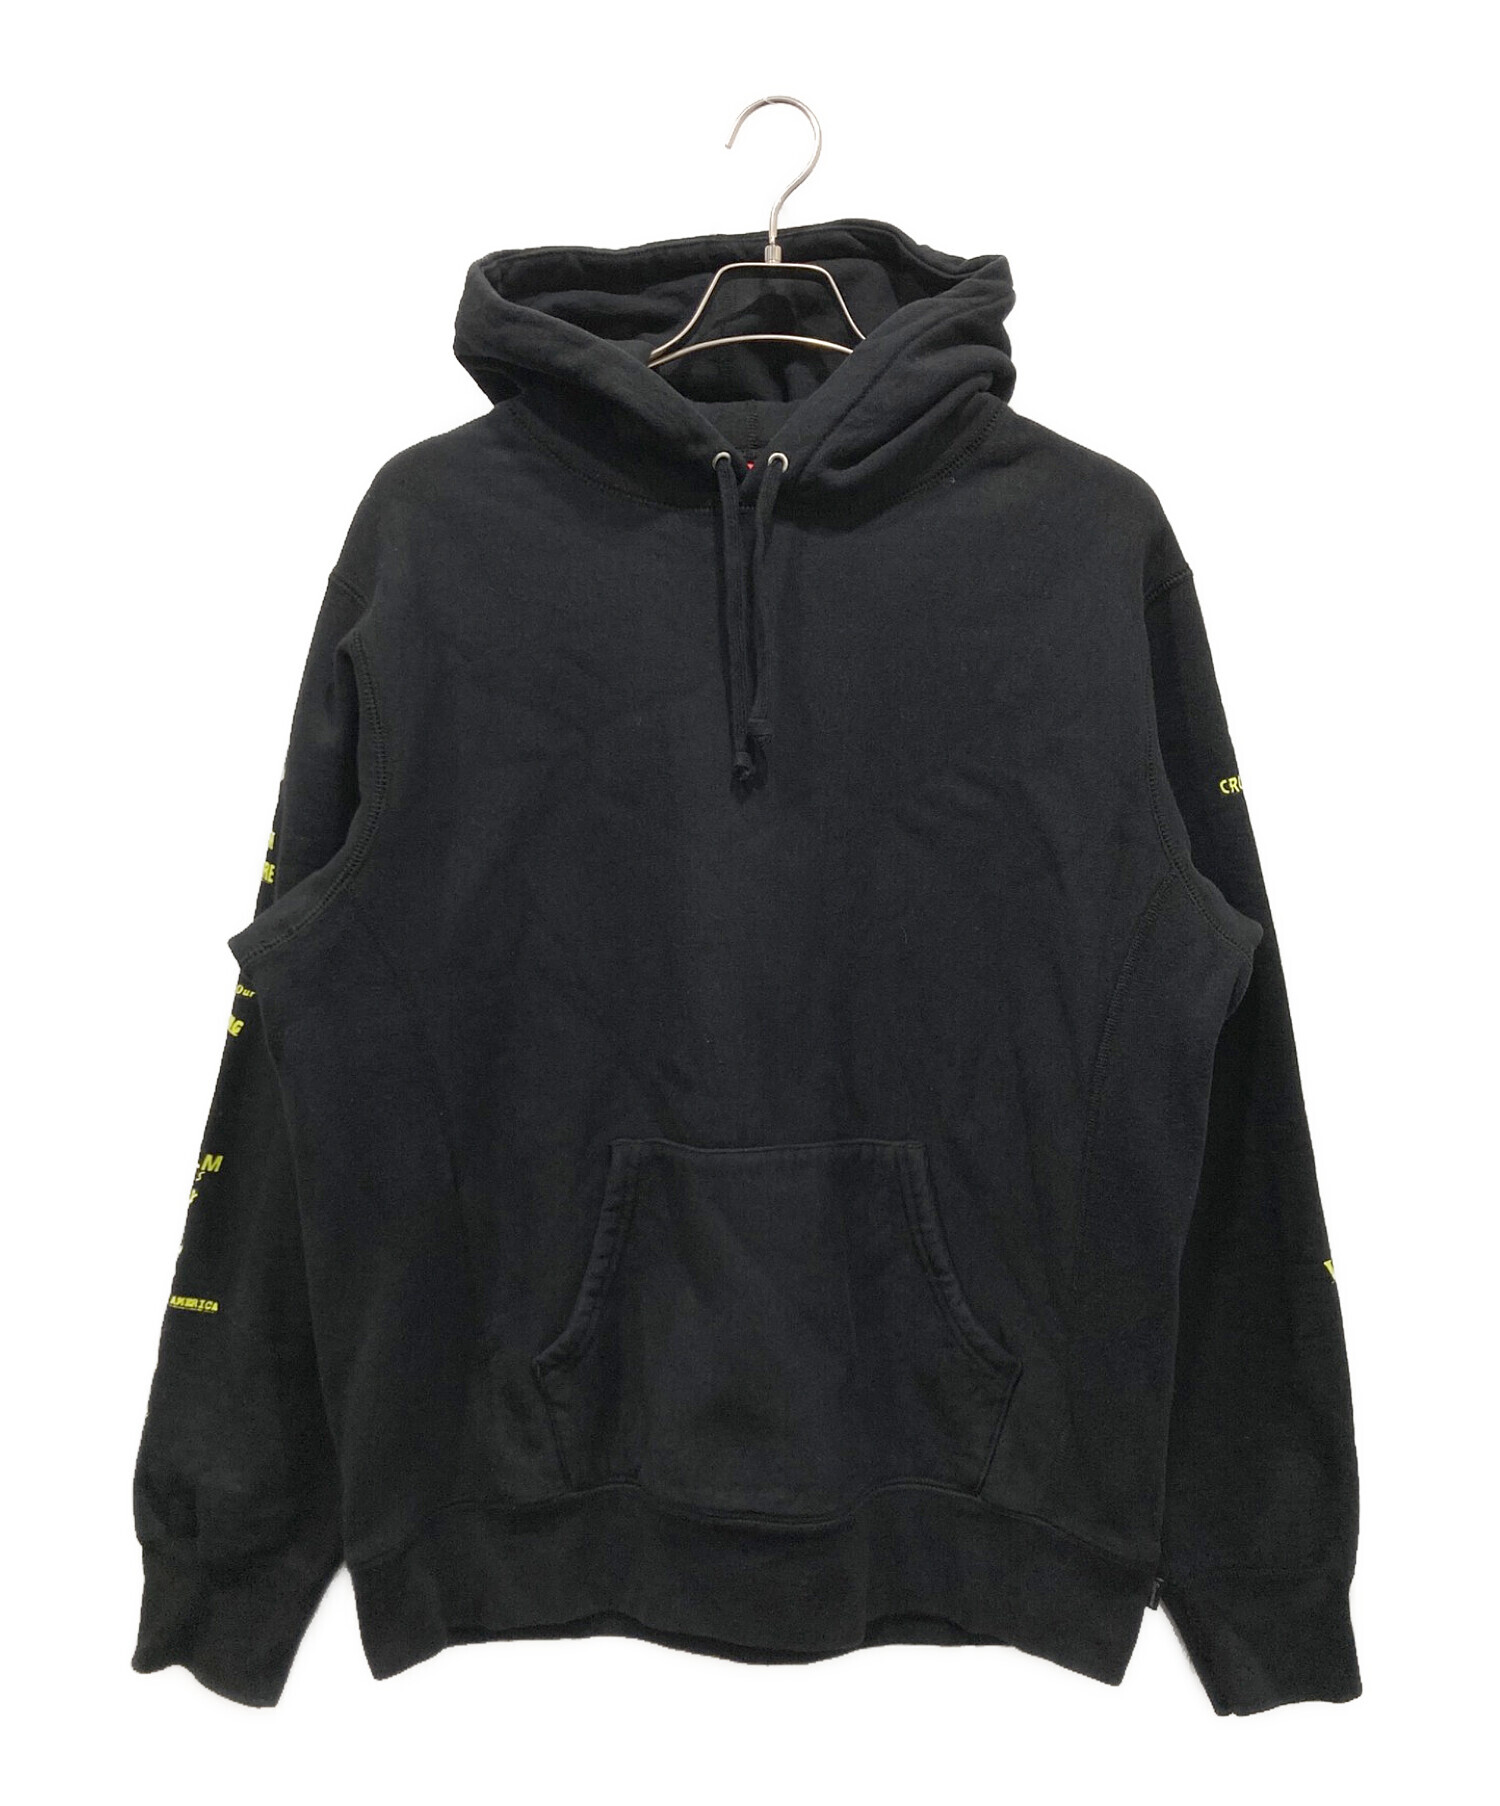 SUPREME (シュプリーム) Menace Hooded Sweatshirt ブラック サイズ:M